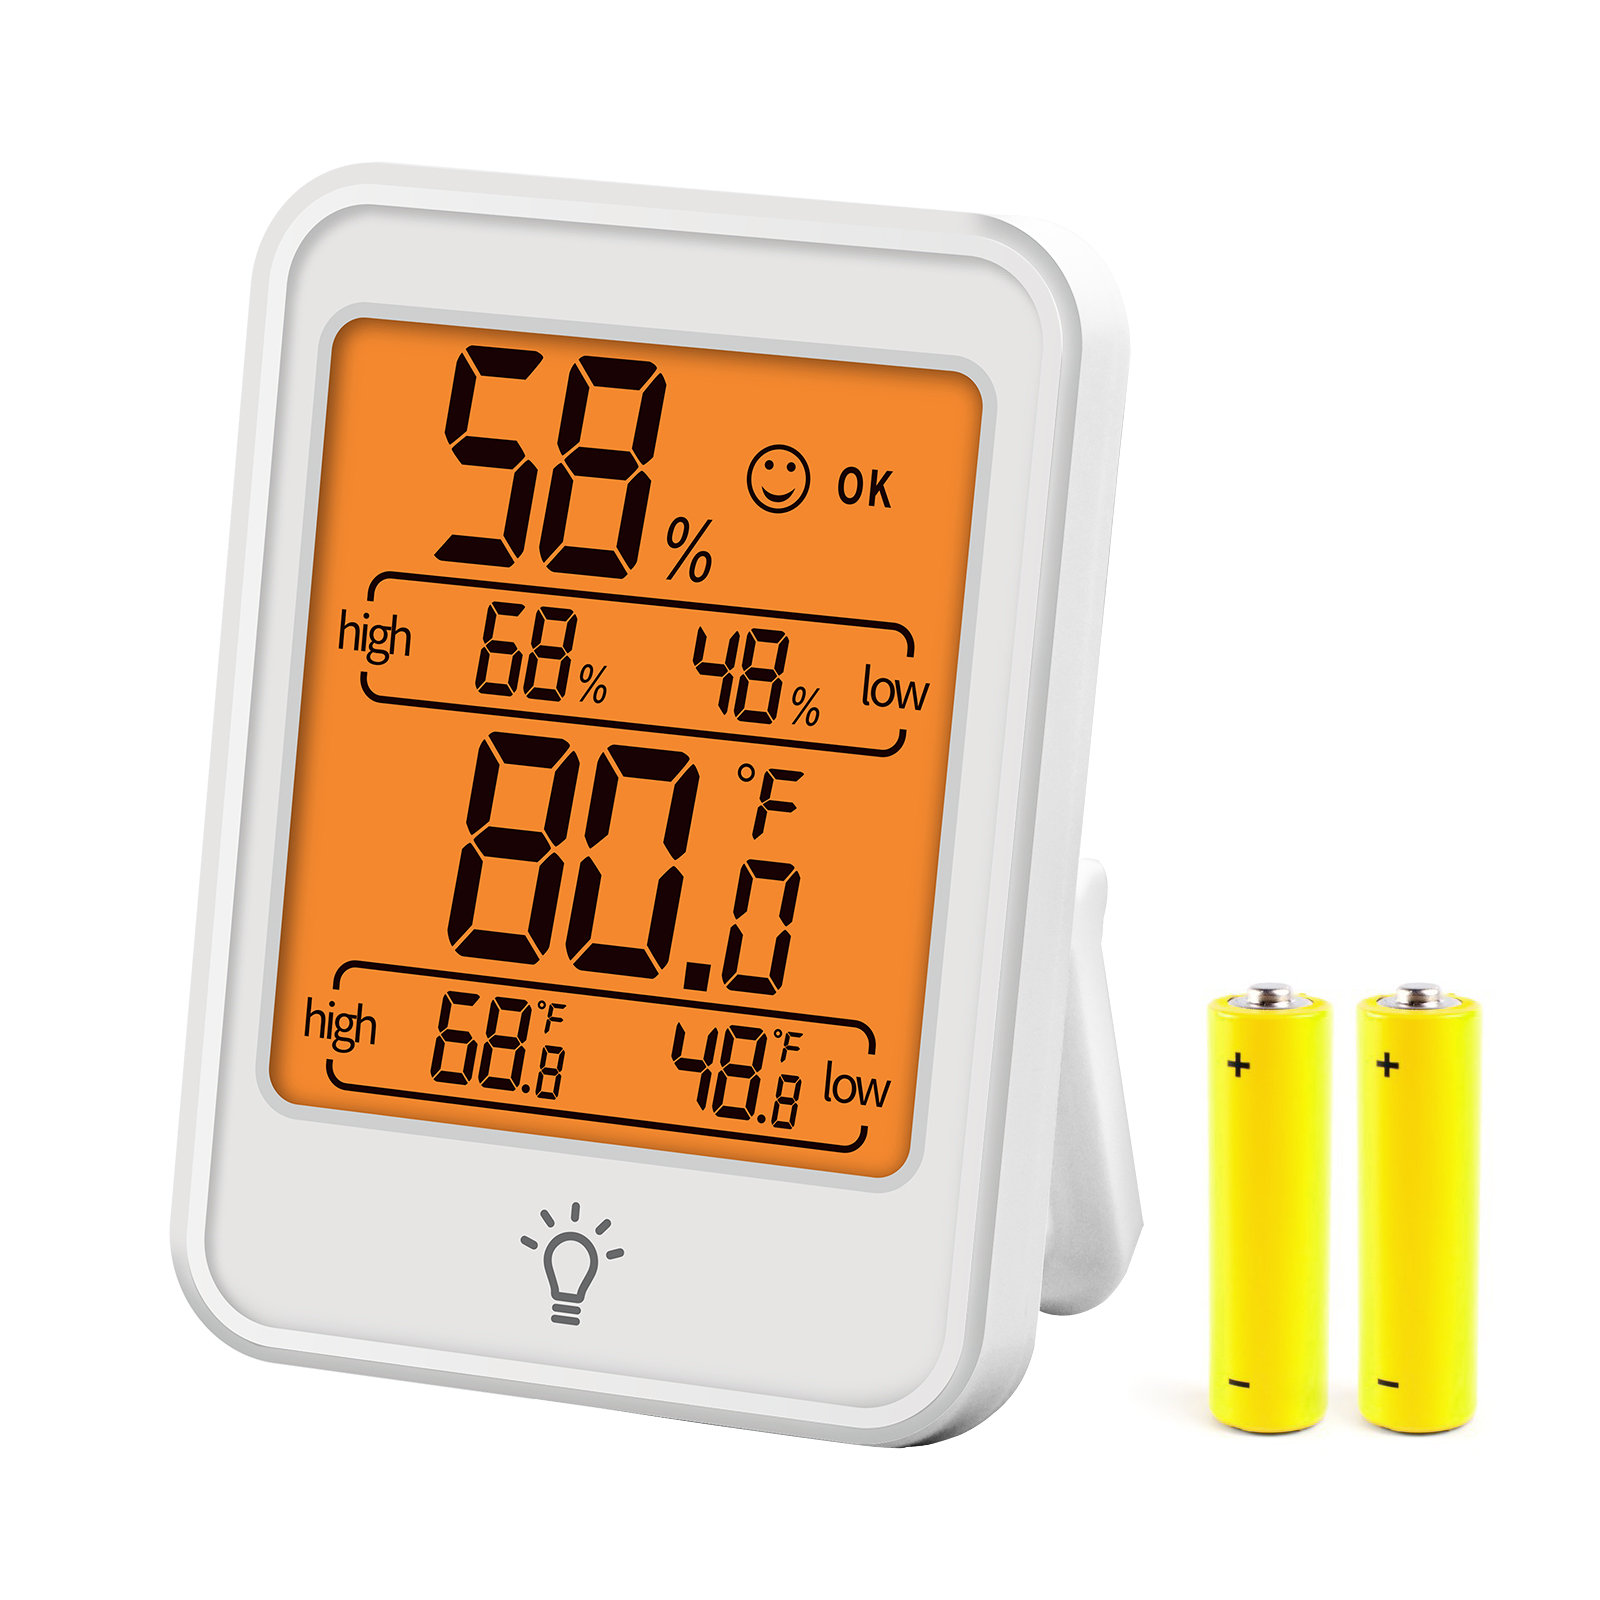 Digital Thermometer / Hygrometer (Indoor - Outdoor)